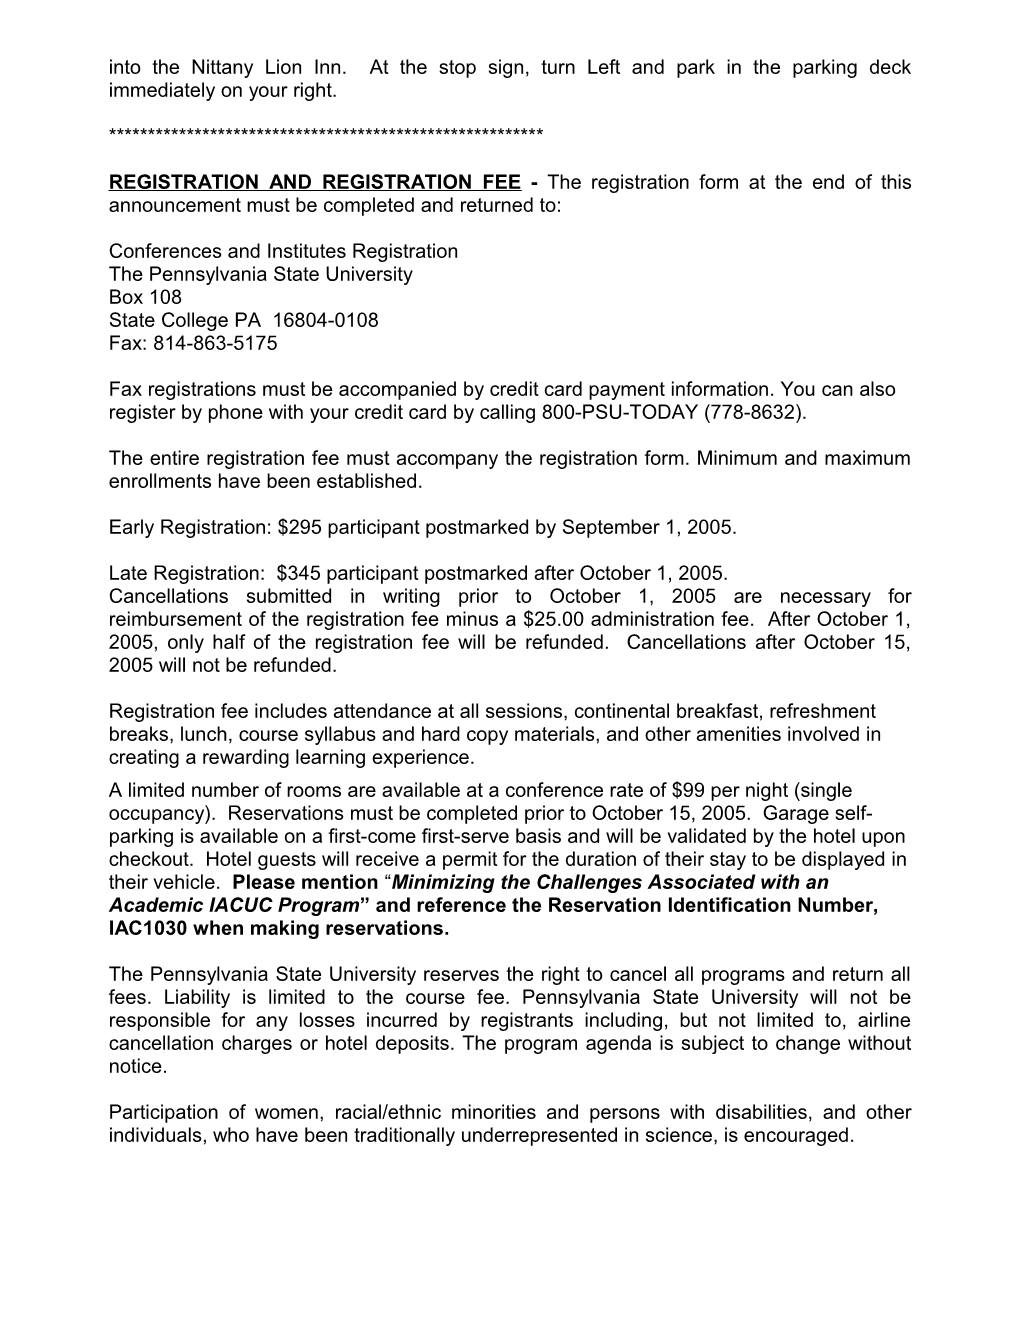 Penn State Registration for IACUC Program 08/18/2005